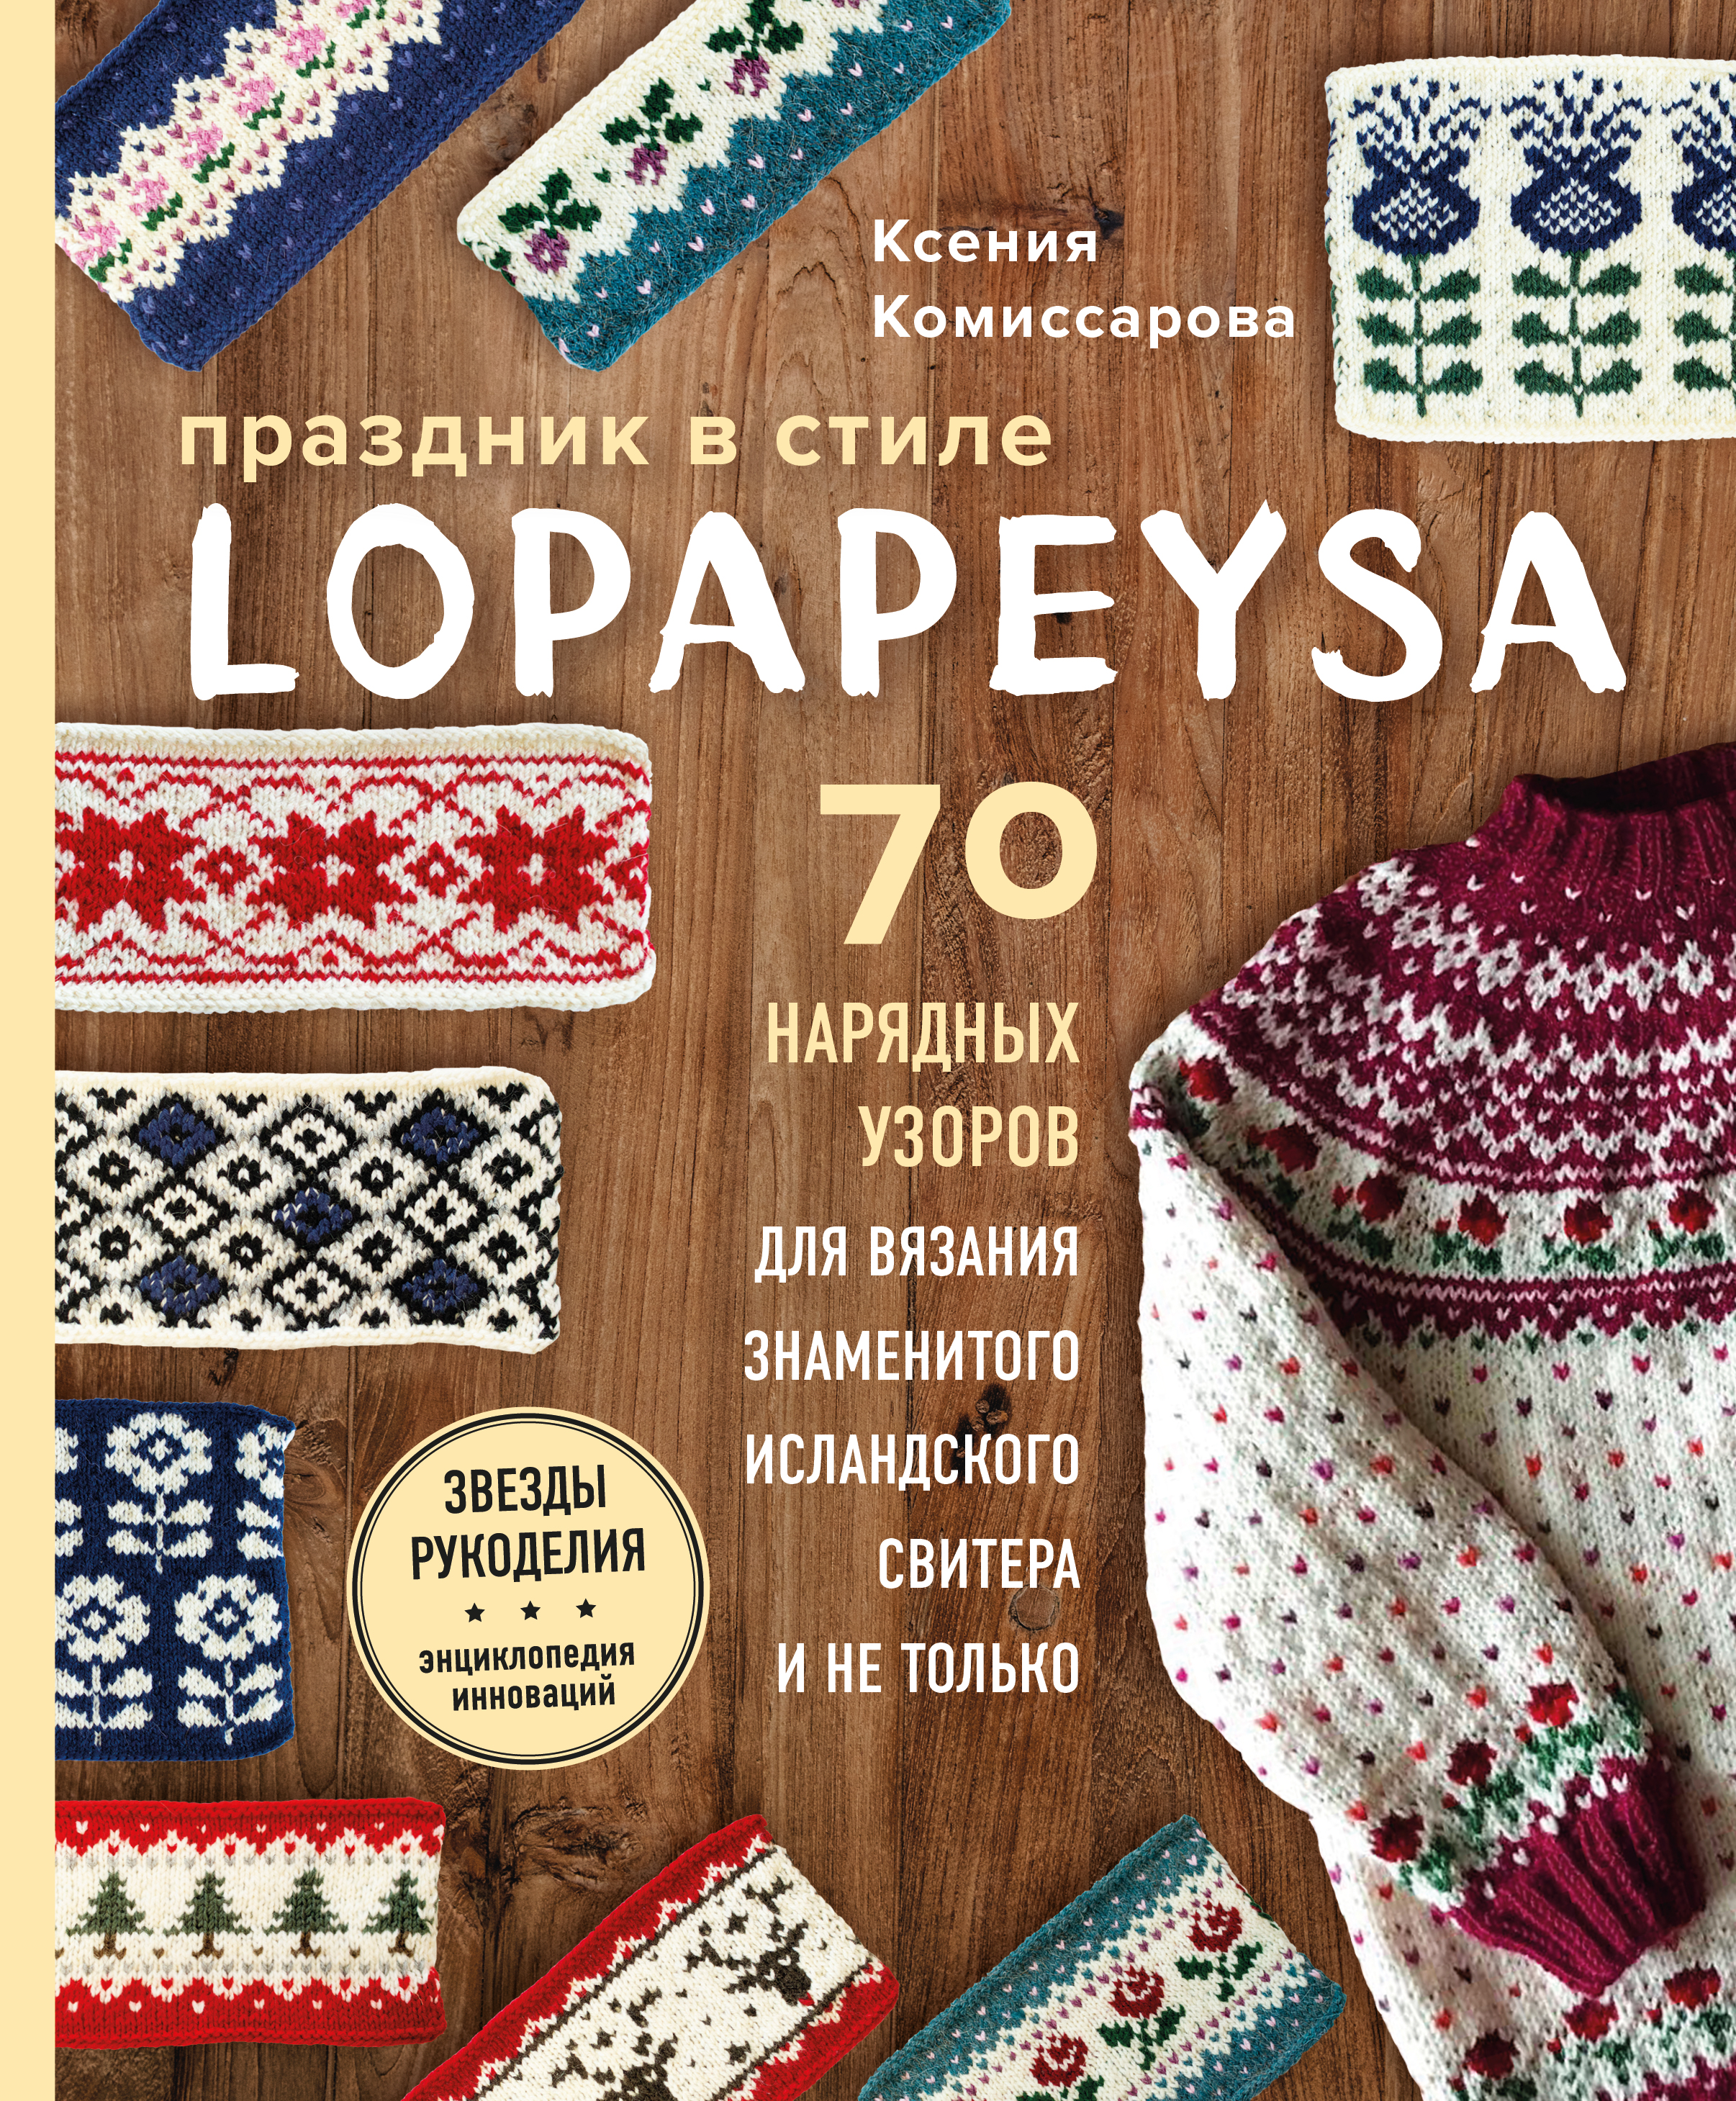 Комиссарова К.Е. Праздник в стиле LOPAPEYSA. 70 нарядных узоров для вязания знаменитого исландского свитера и не только 